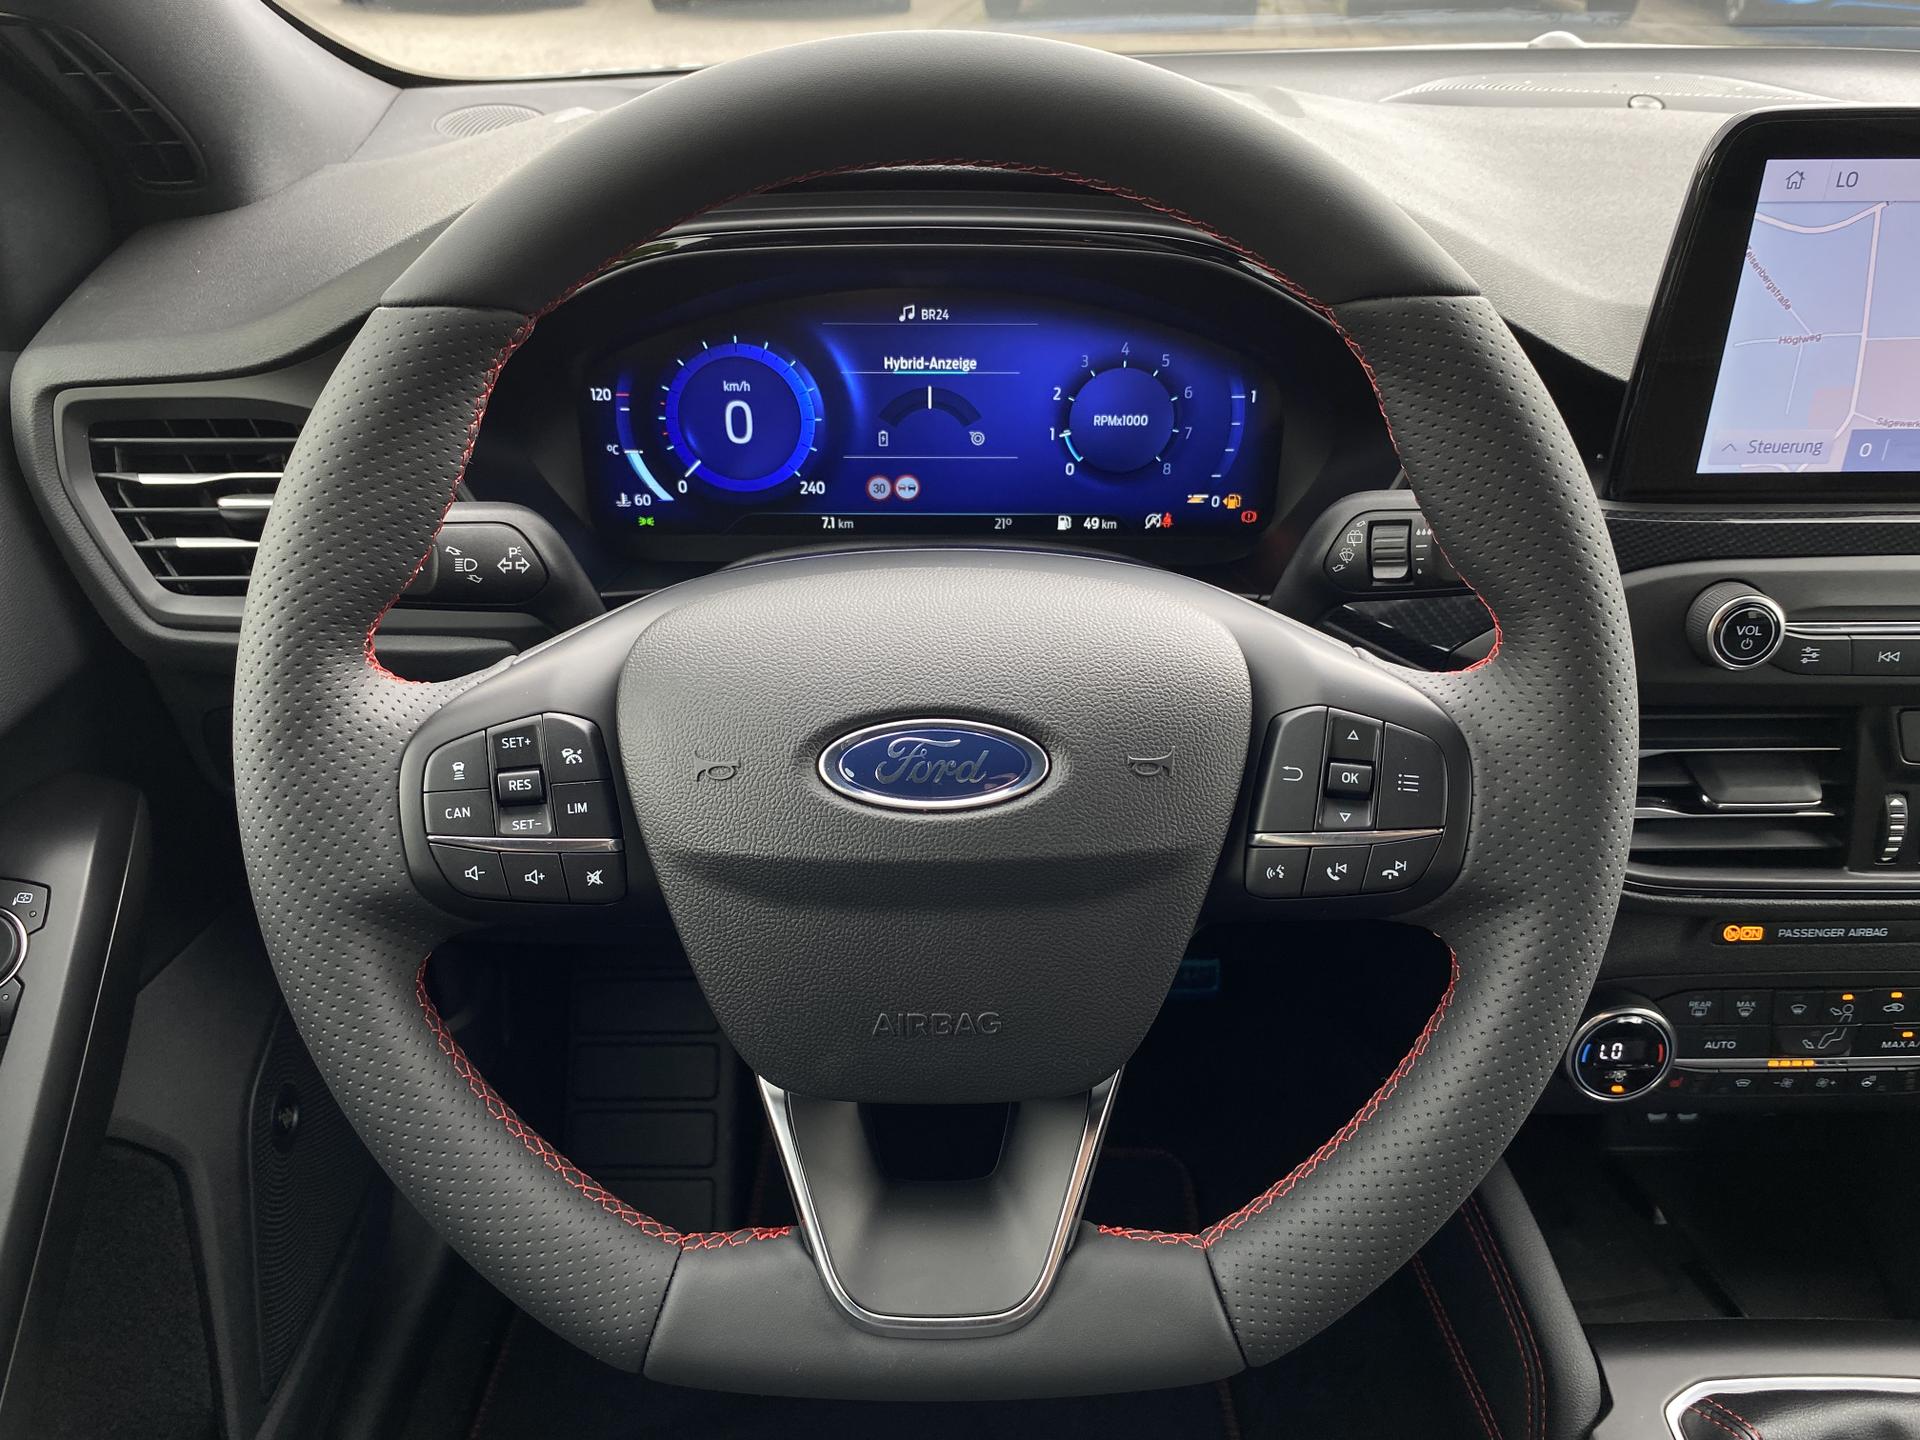 Ford Fiesta ST Edition: Einstellbares Fahrwerk und besondere Optik